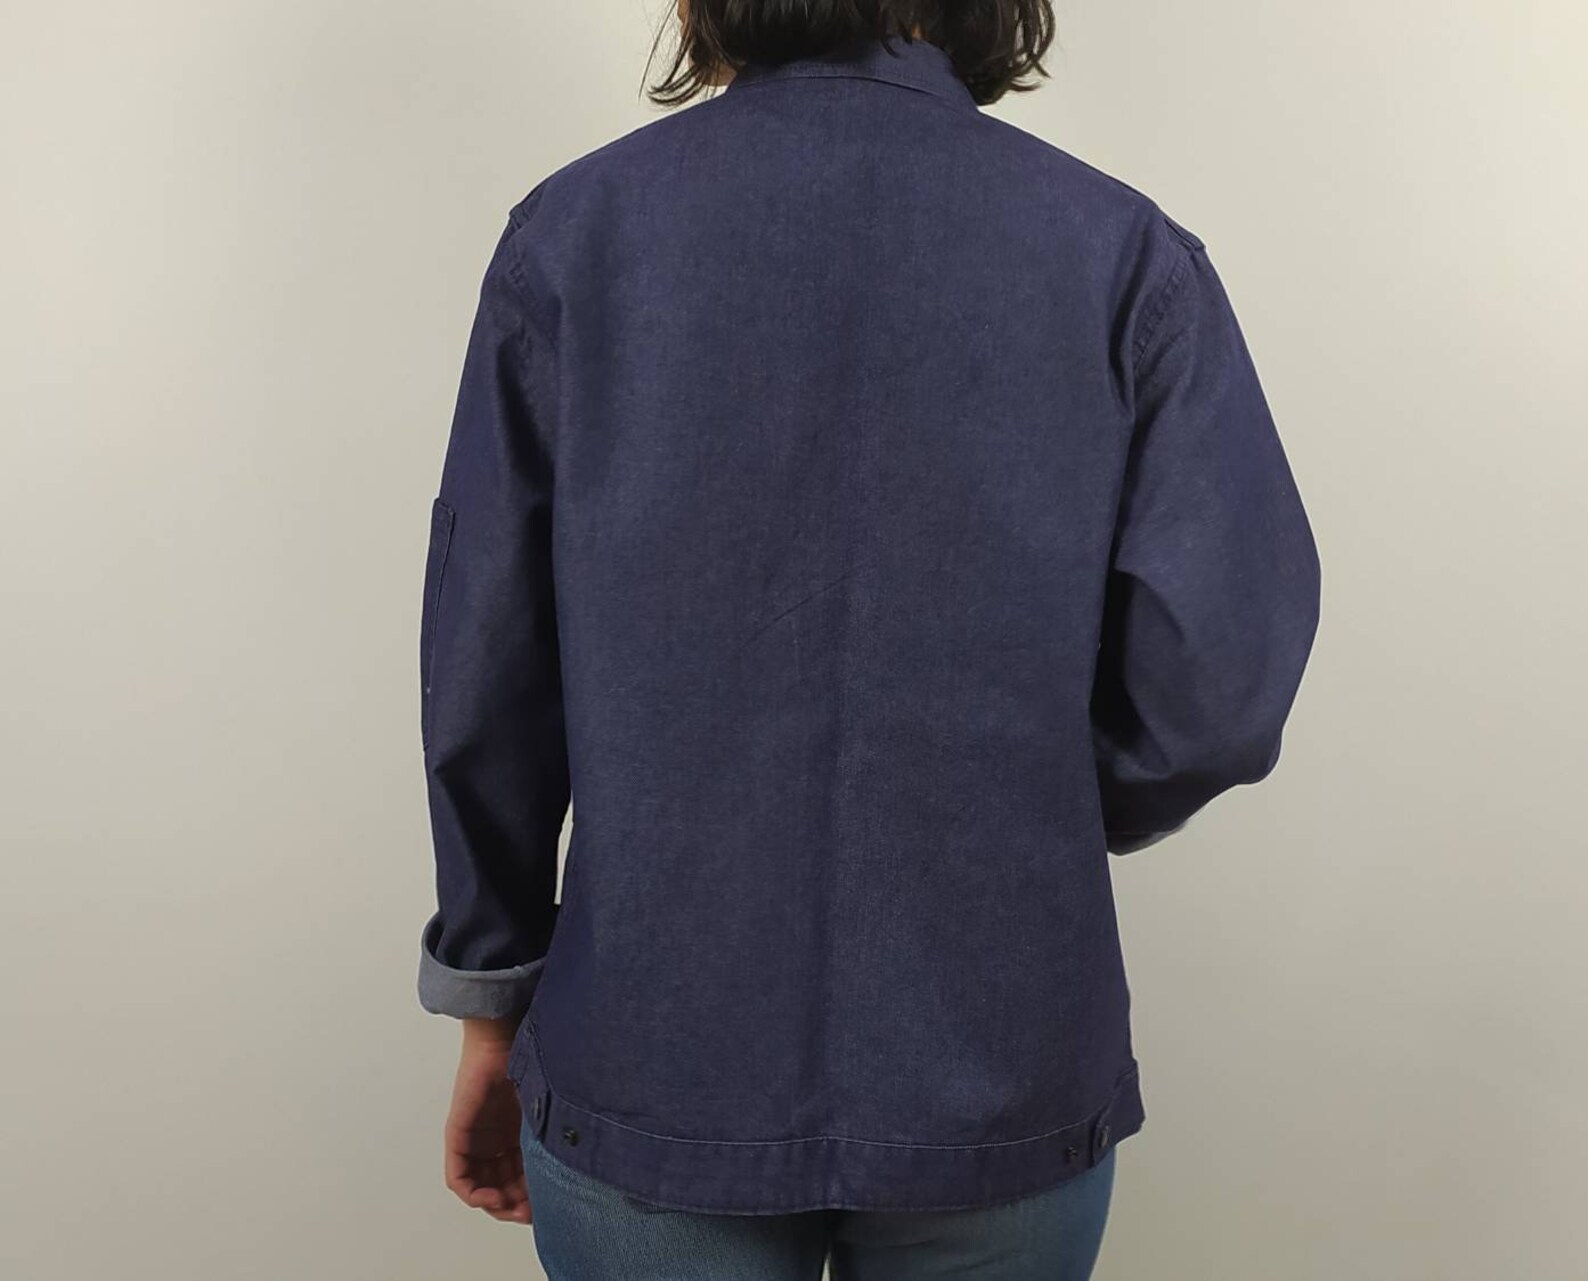 80's Vintage Indigo French Denim chore work jacket from | Etsy